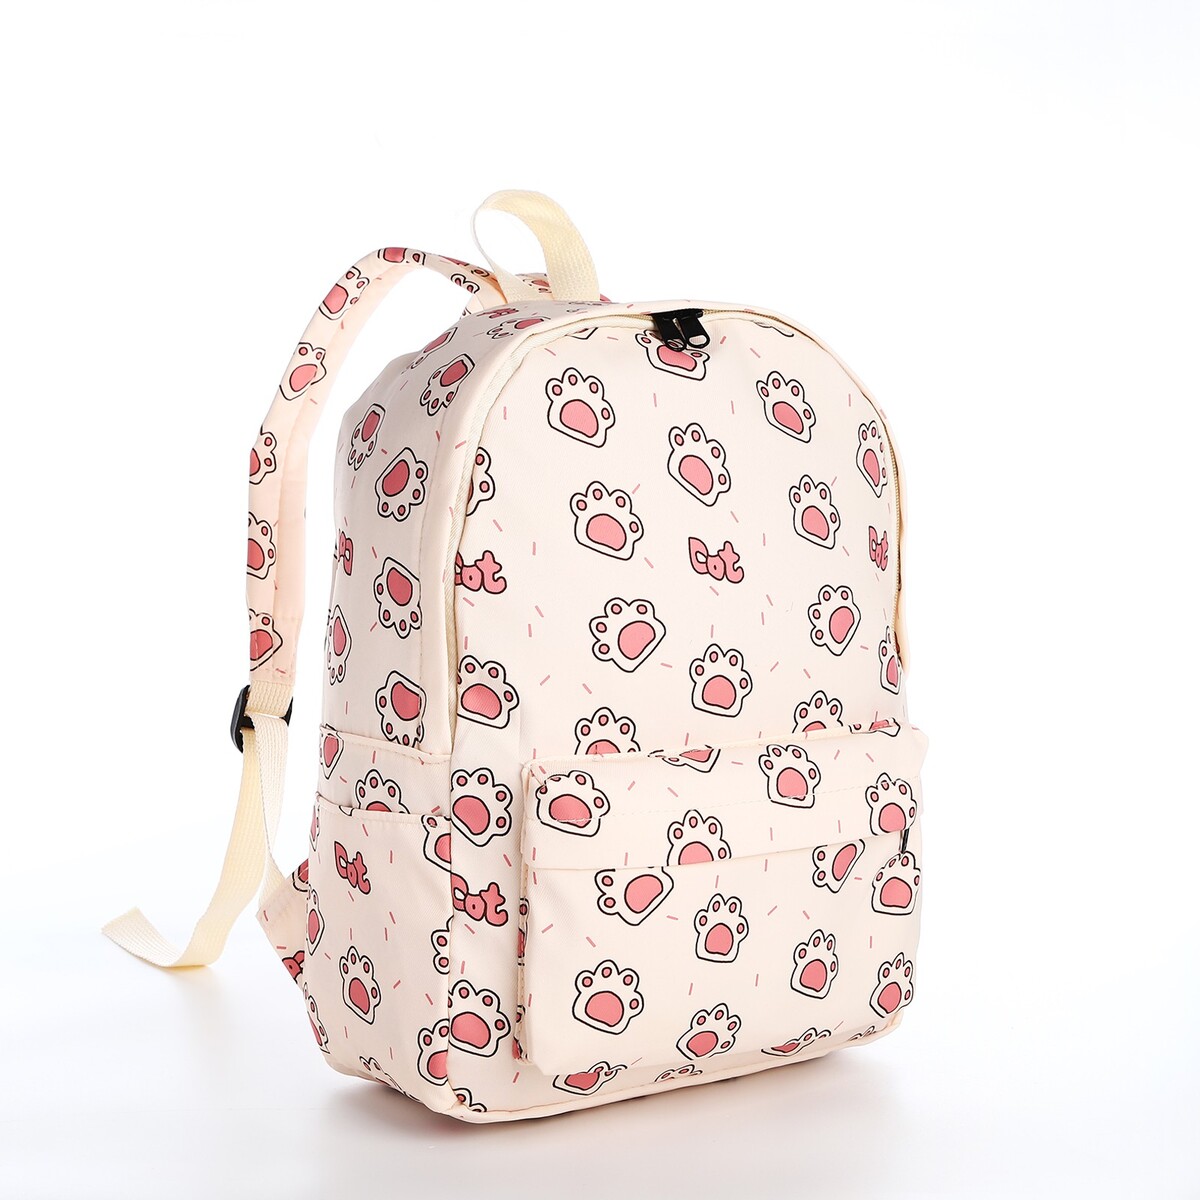 Рюкзак школьный из текстиля на молнии, 3 кармана, цвет бежевый/розовый рюкзак школьный из текстиля на молнии 4 кармана кошелек бежевый